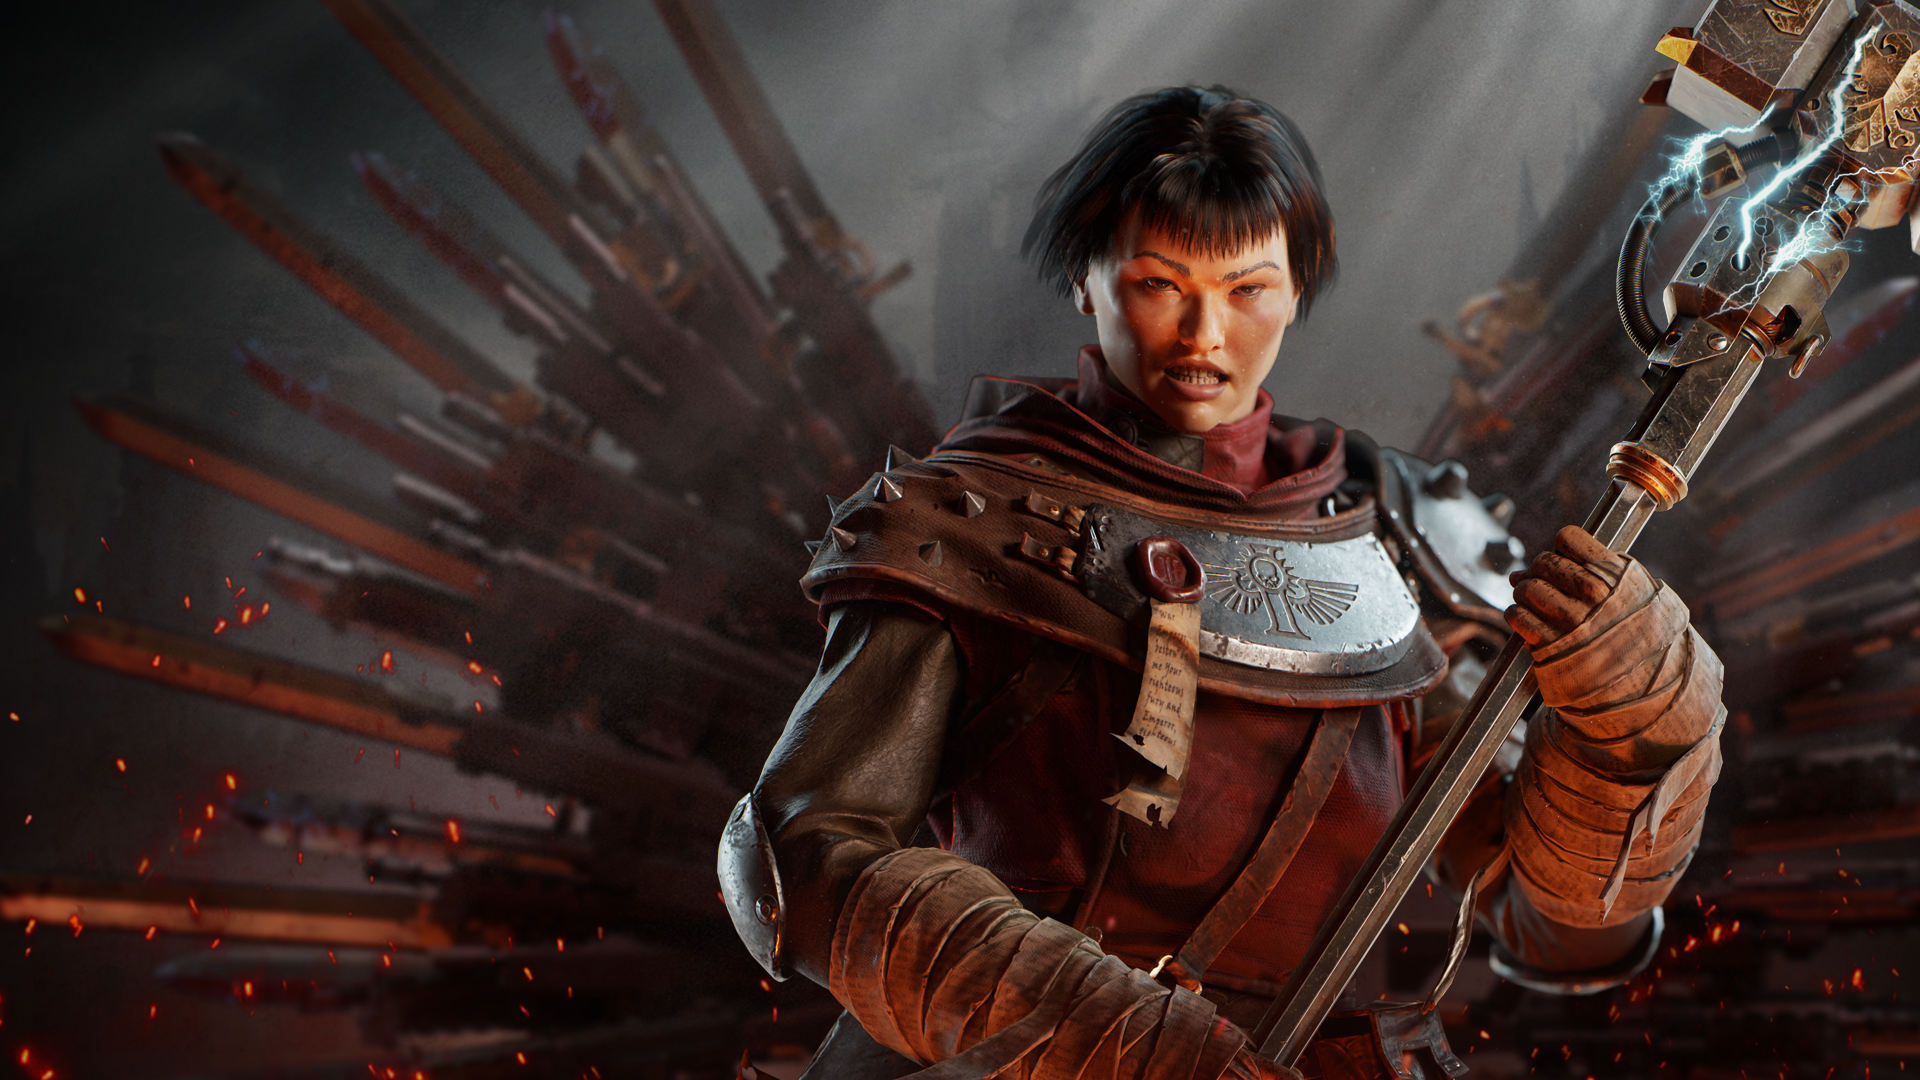 Prédicateur zélé de Warhammer 40,000 Darktide.  Une femme aux cheveux noirs coupés, vêtue d'une robe et d'une armure rouges, elle tient un gros marteau qui crépite d'électricité.